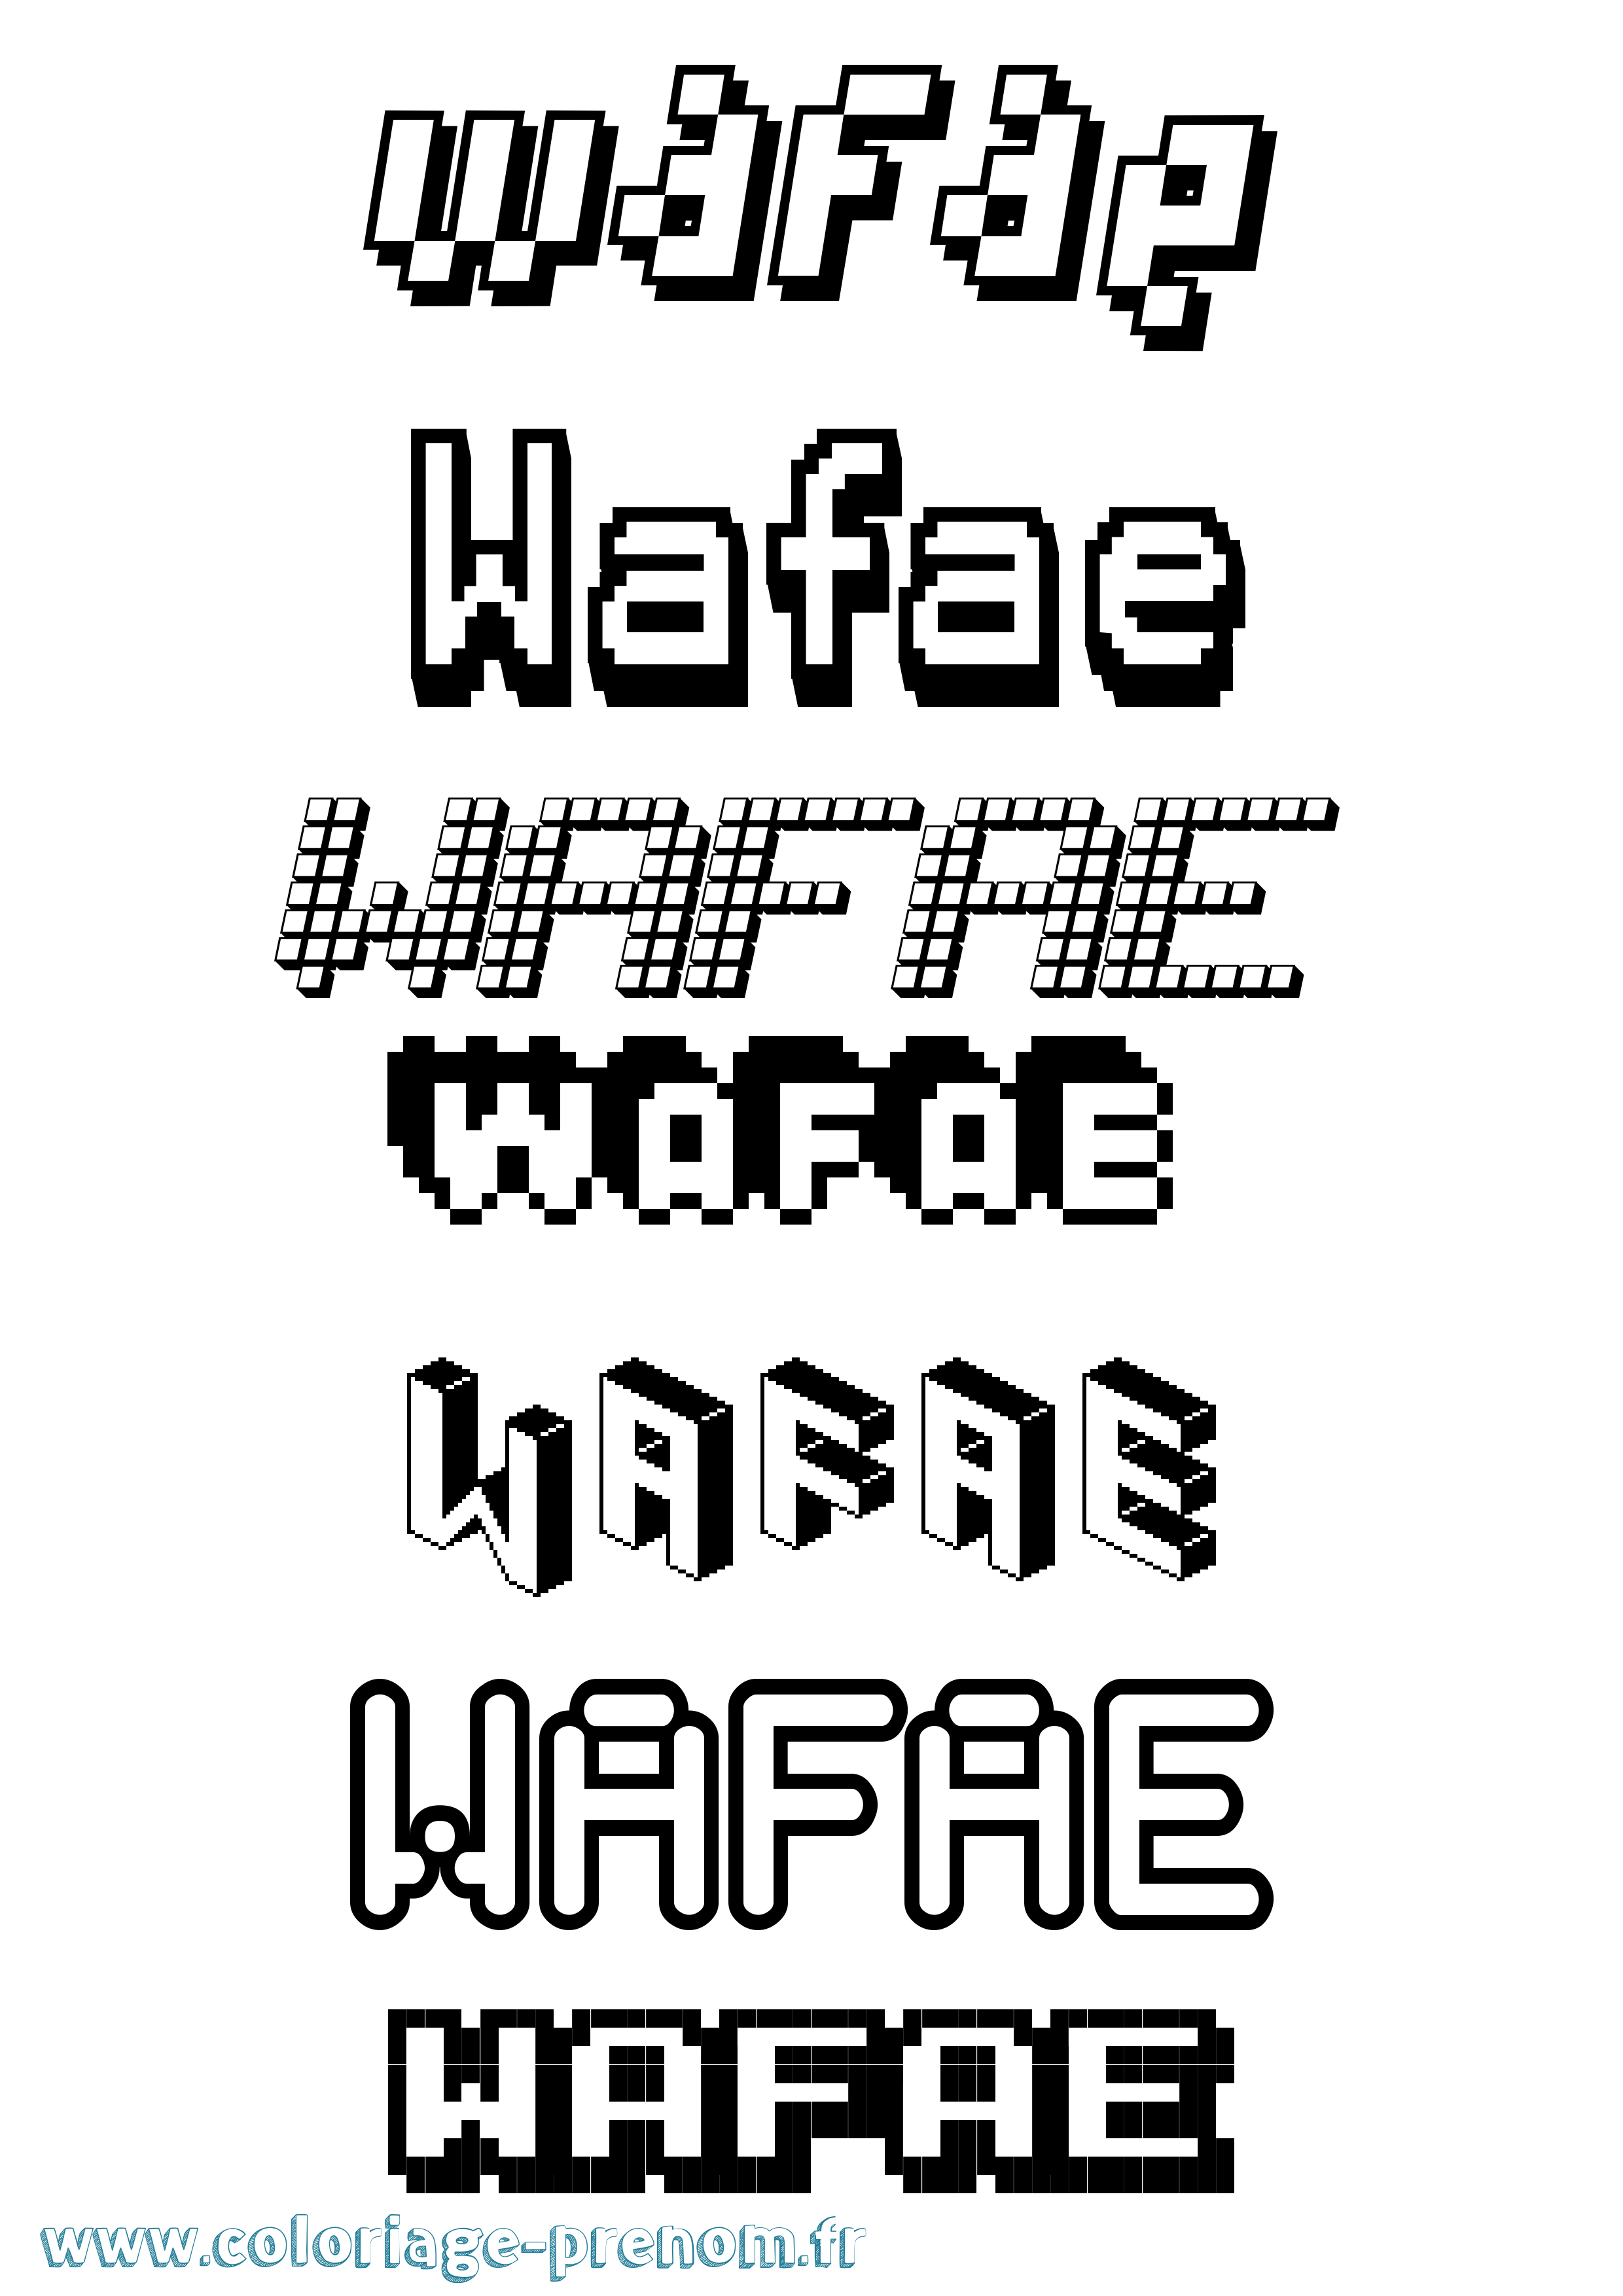 Coloriage prénom Wafae Pixel